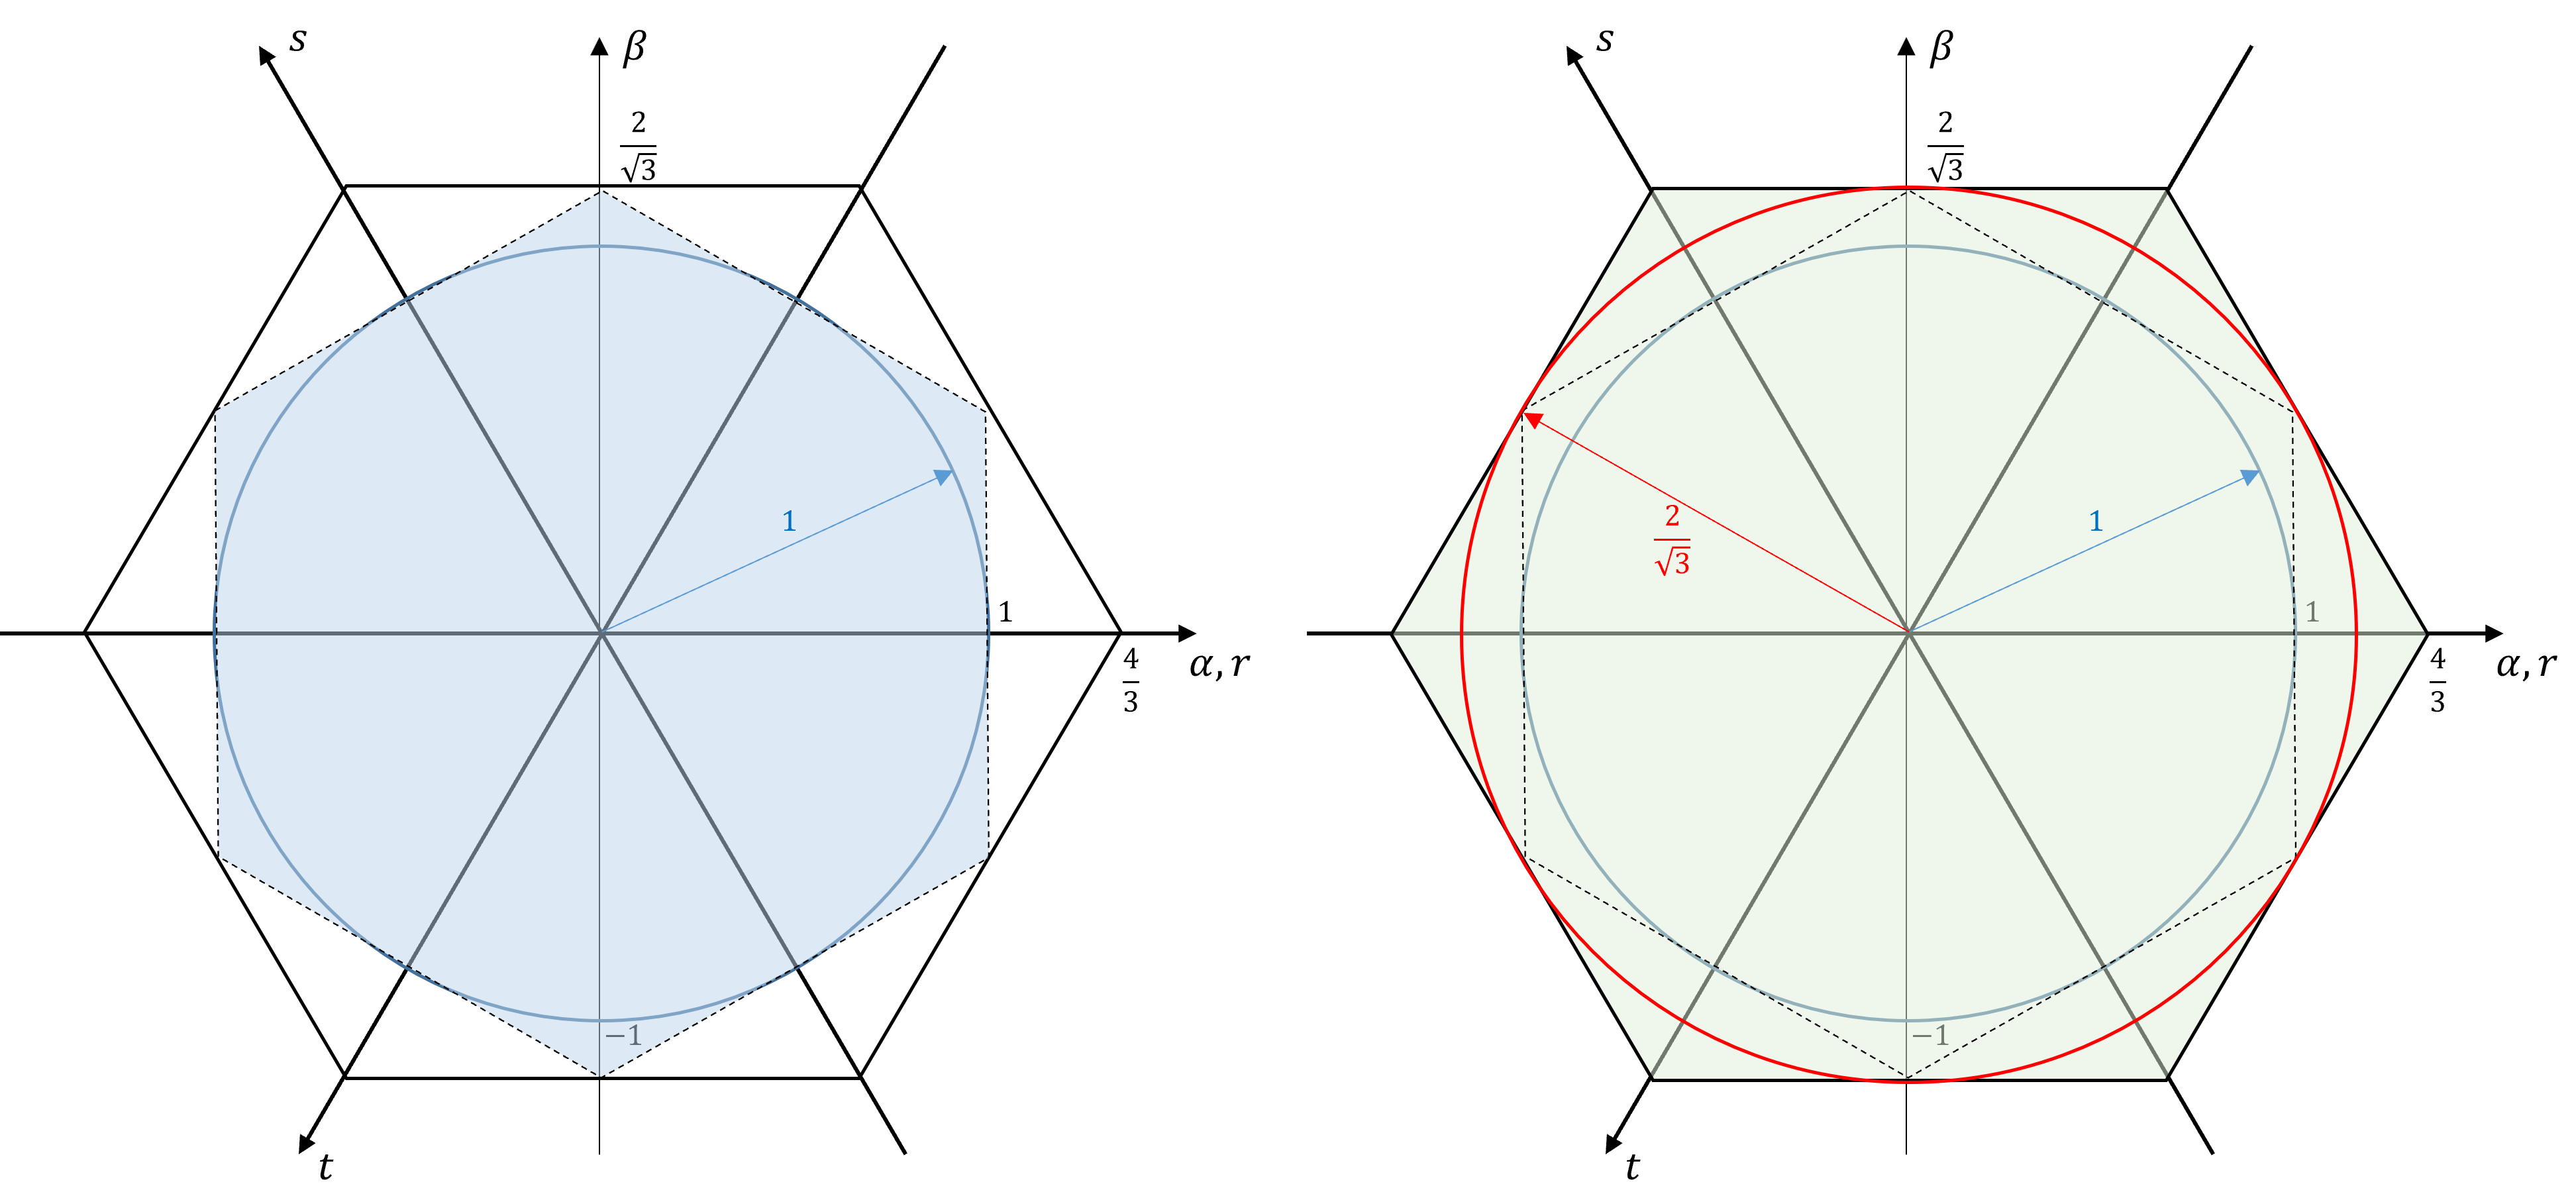 Vergleich der durch Dreiecksmodulation realisierbaren Spannungsvektoren (links: ohne Nullpunktverschiebung, rechts: mit Nullpunktverschiebung)